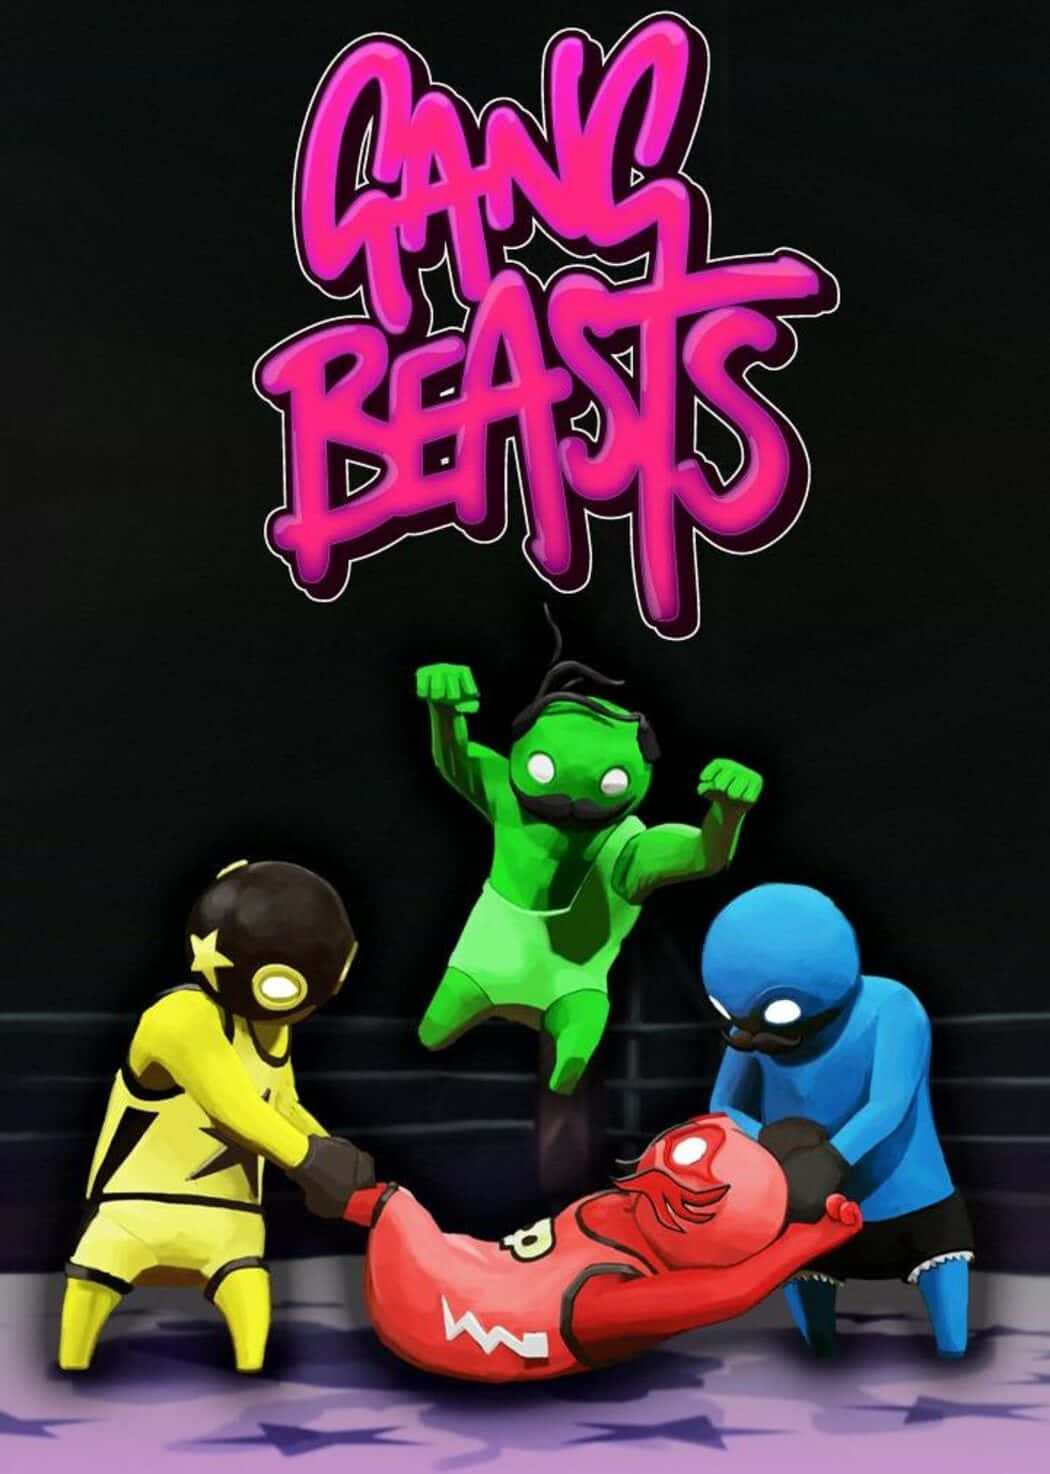 Gang Beasts - Screenshots Wallpaper